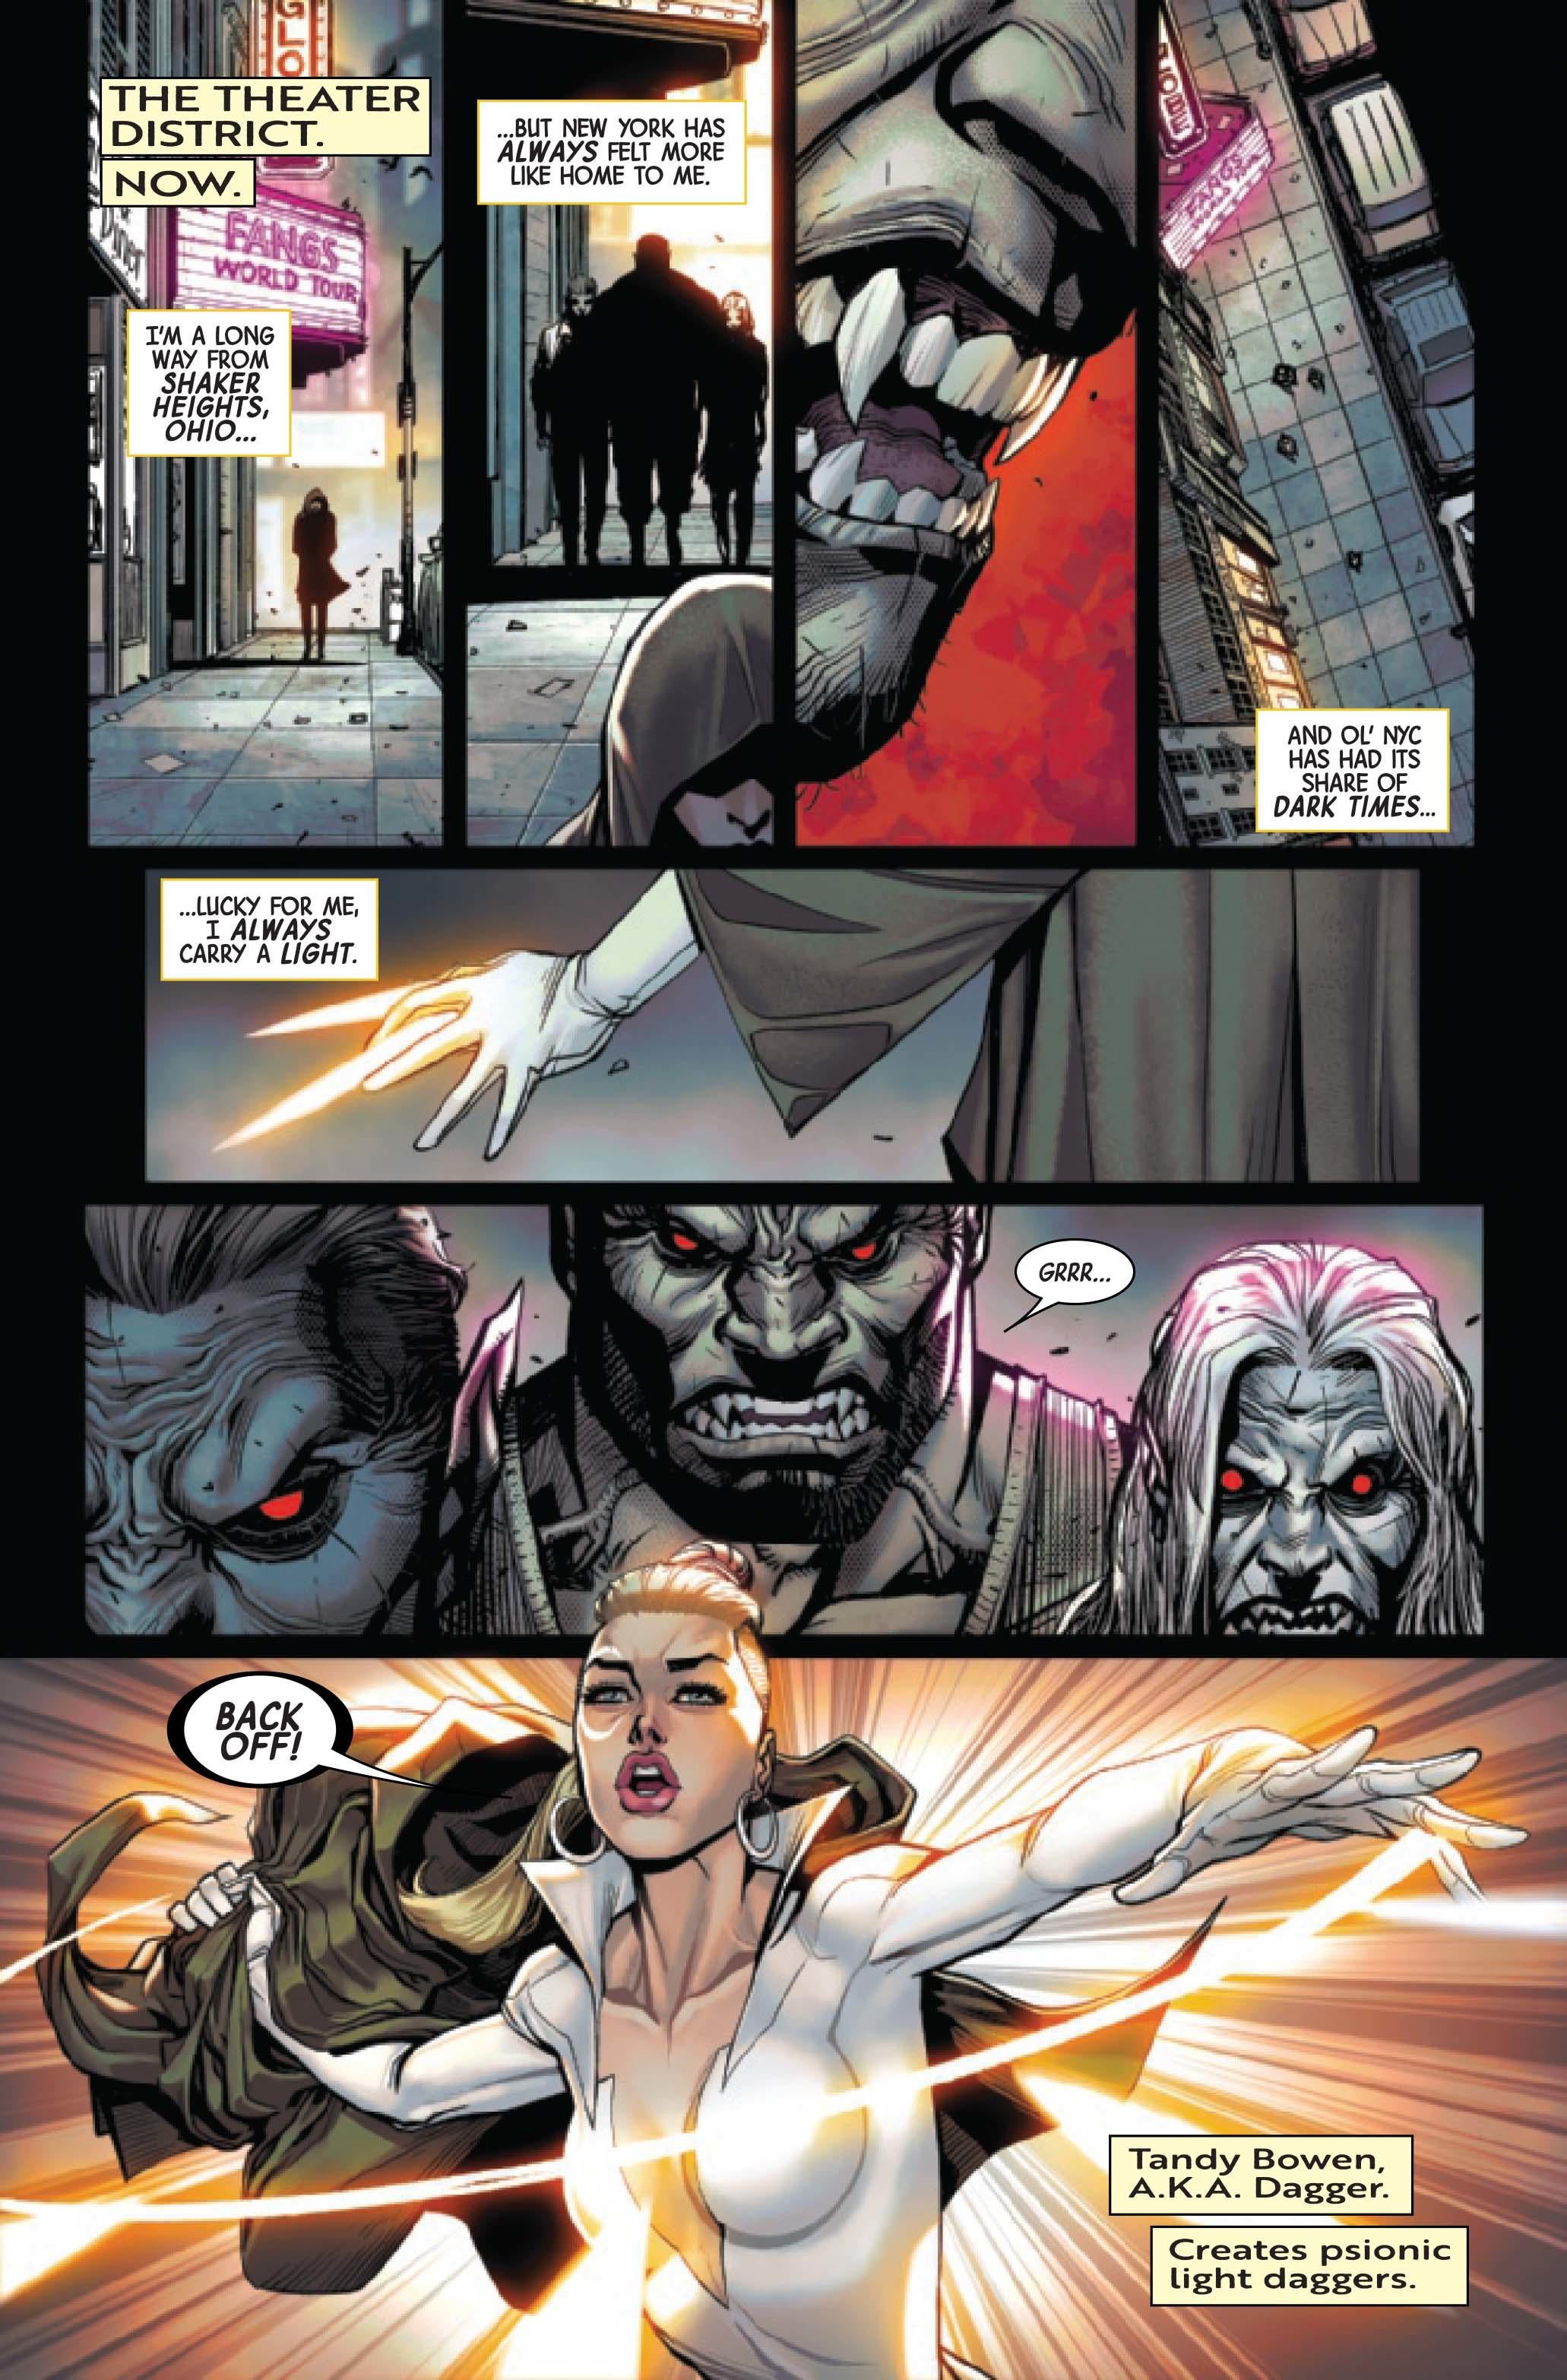 Marvel собирает новую команду истребителей вампиров в Blood Hunters #1 (эксклюзив)